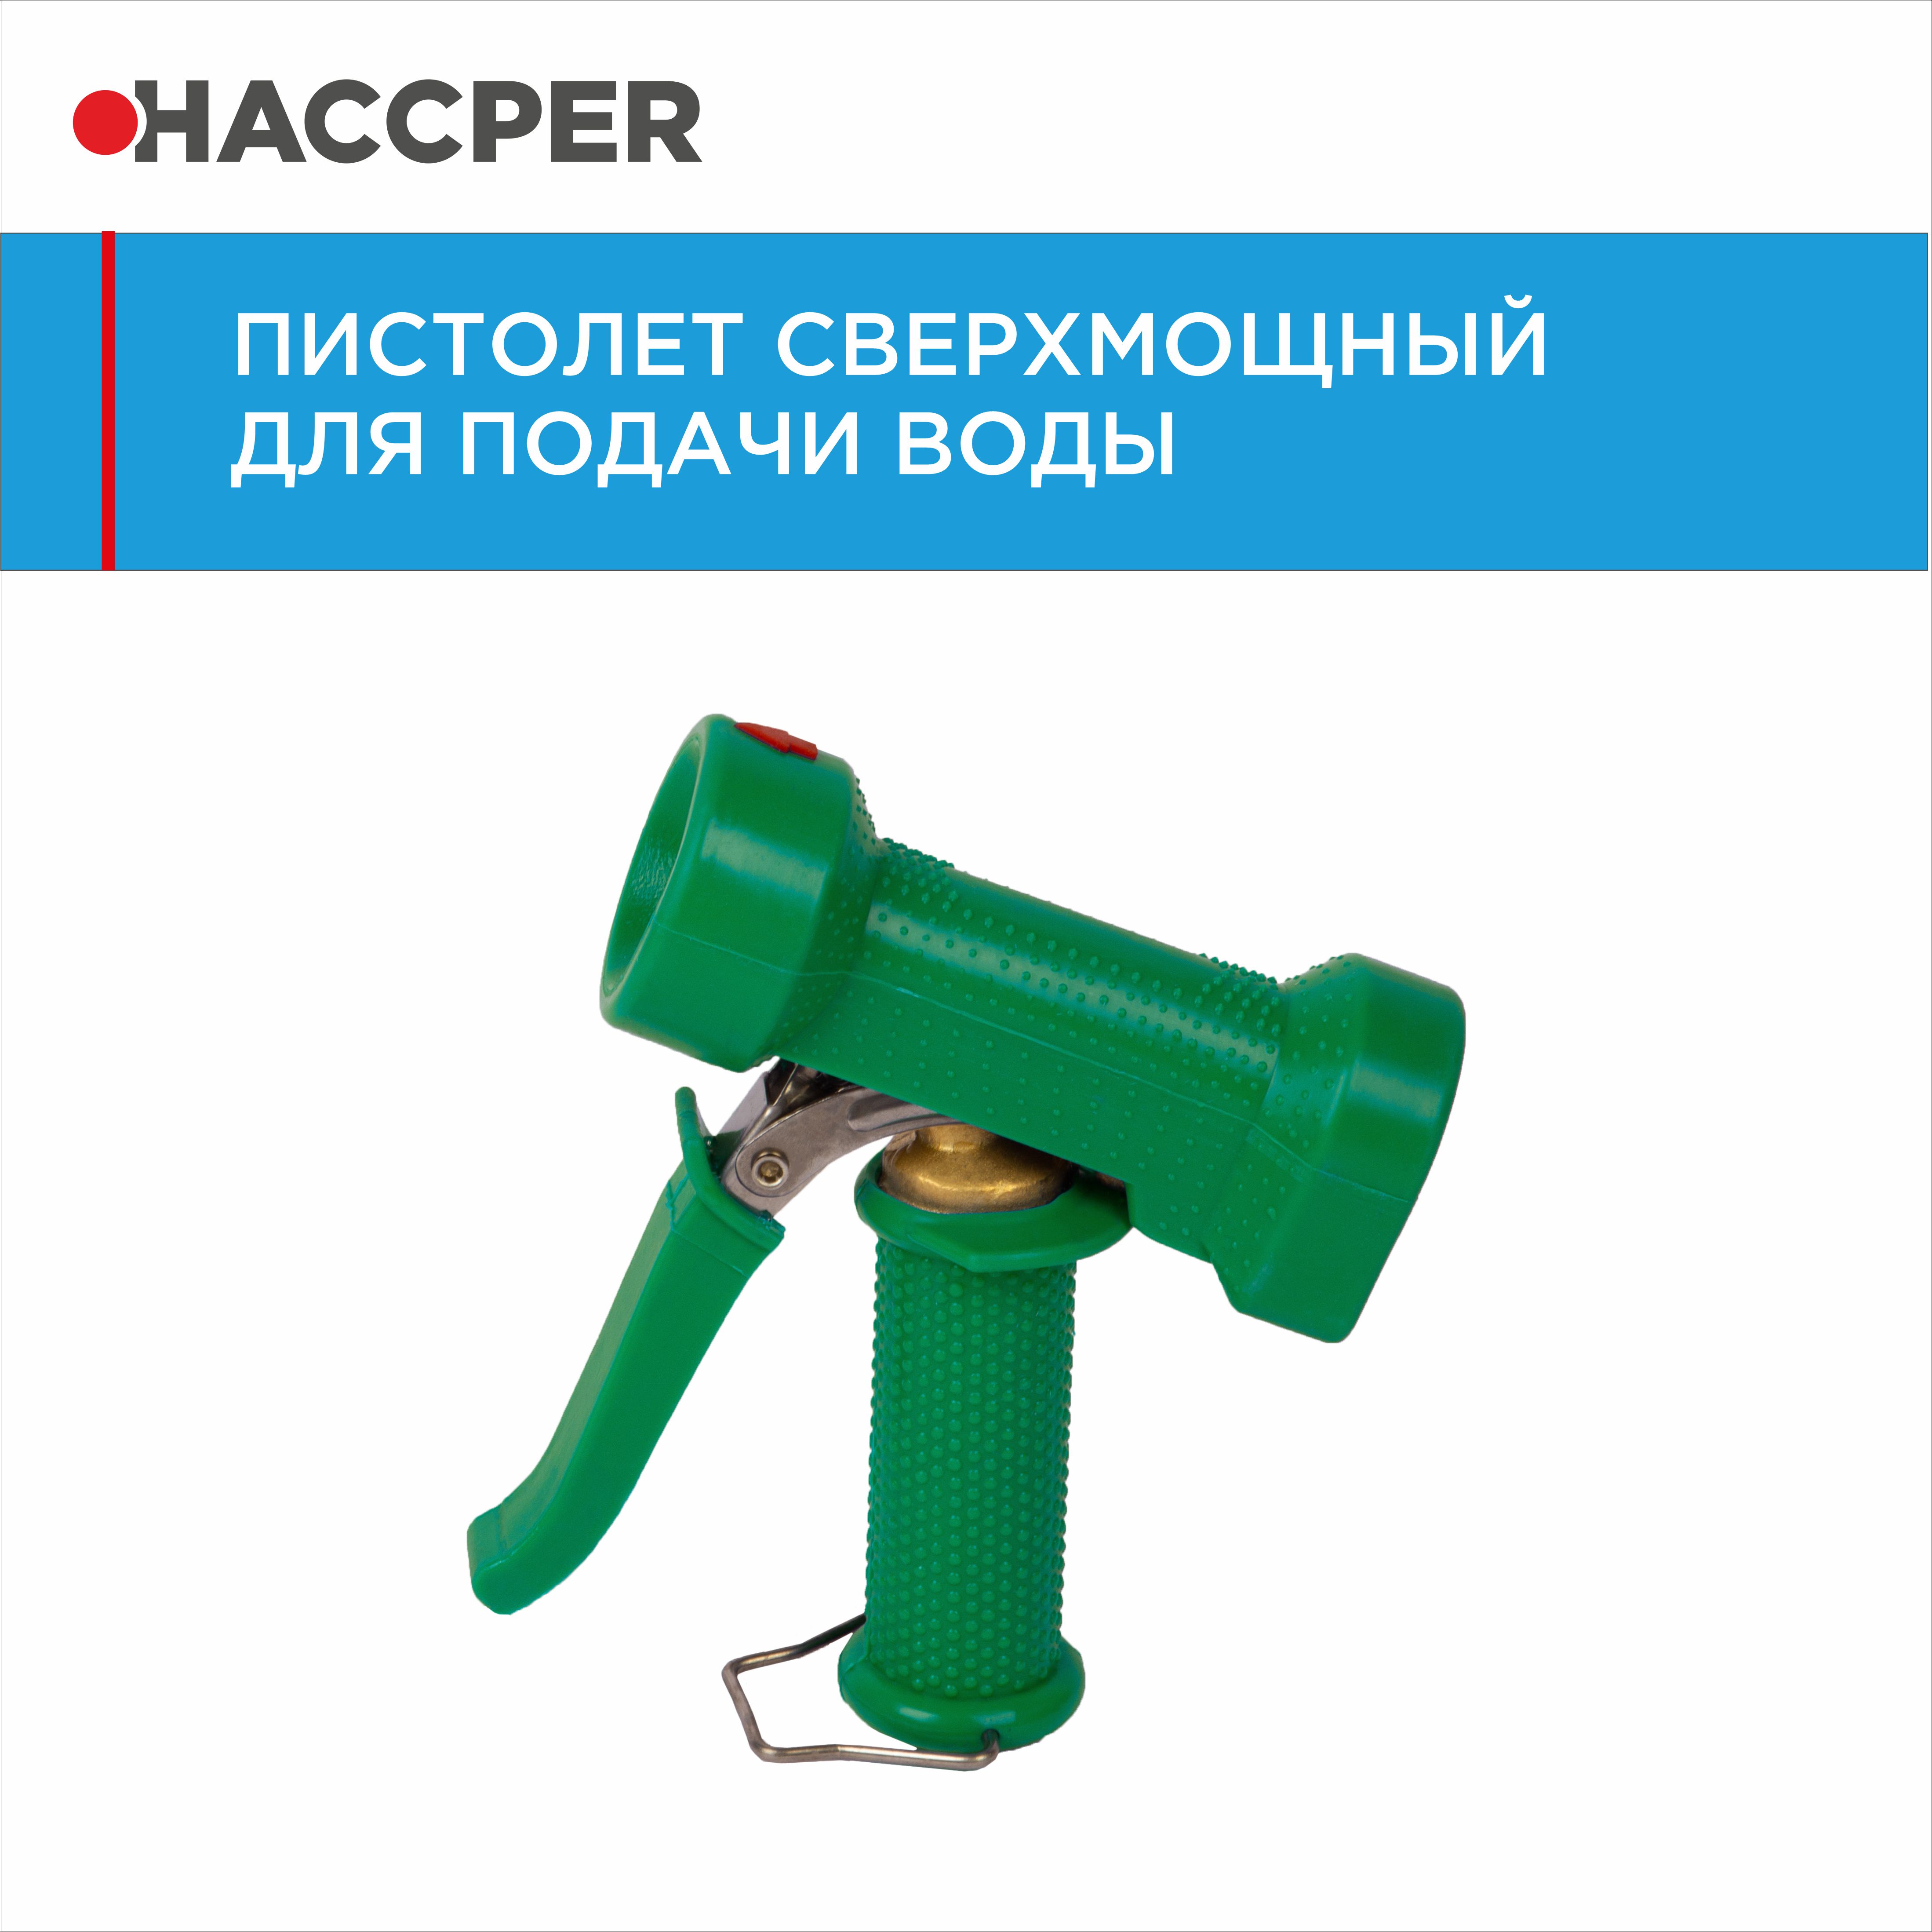 Пистолет HACCPER для подачи воды, зеленый